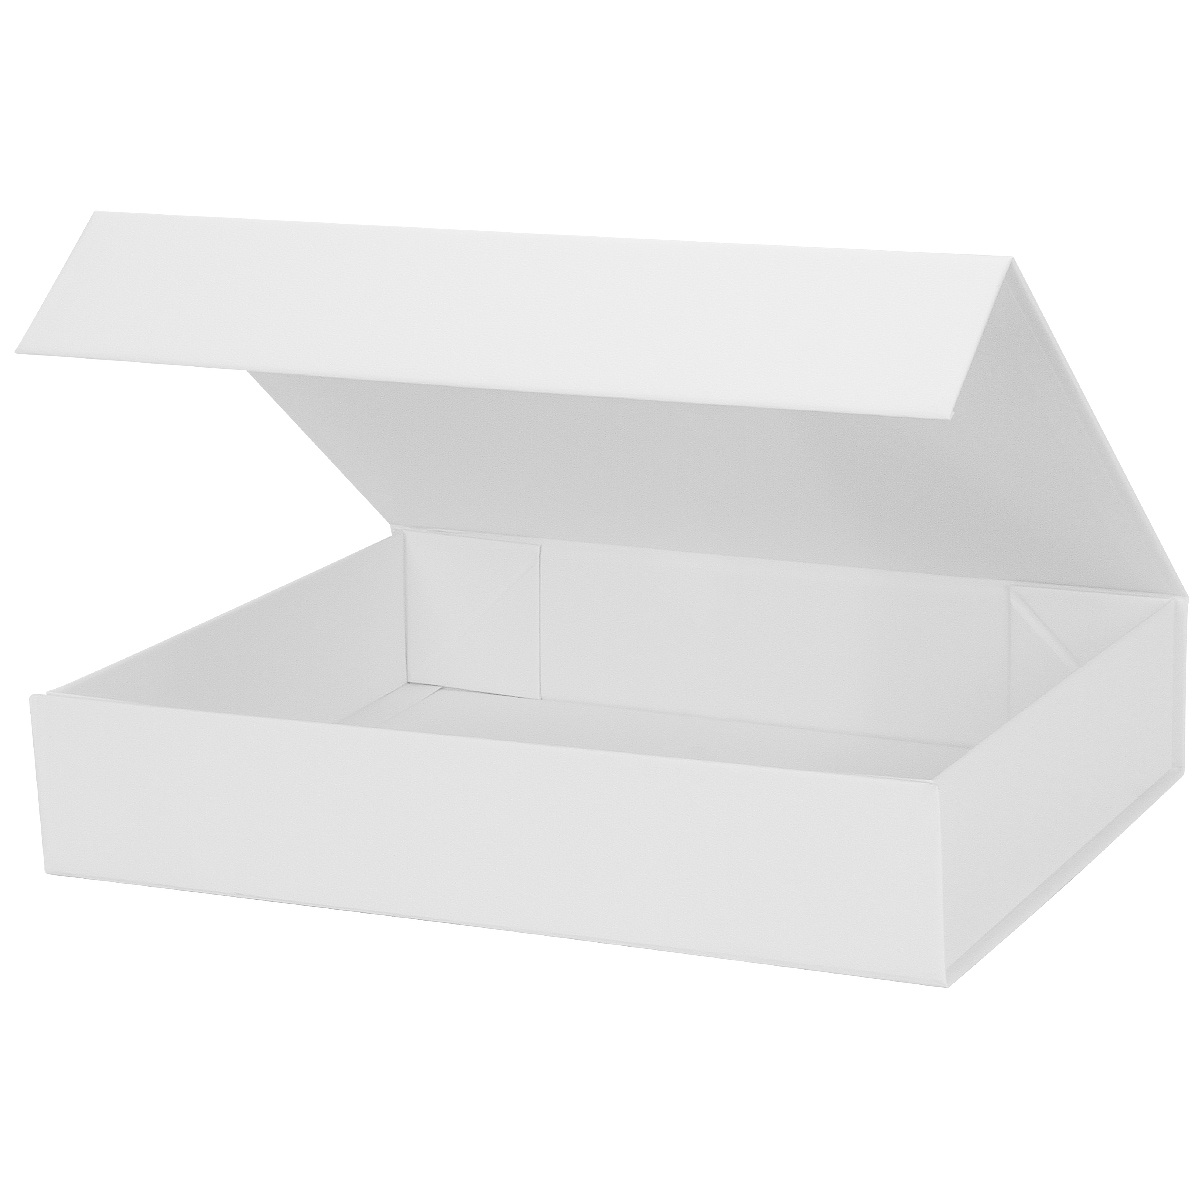  Caja de regalo de 7.8 x 7 x 3.1 pulgadas, color blanco, con  tapa, caja plegable para damas de honor y padrinos de boda, con cierre  magnético; cajas para regalos, bodas